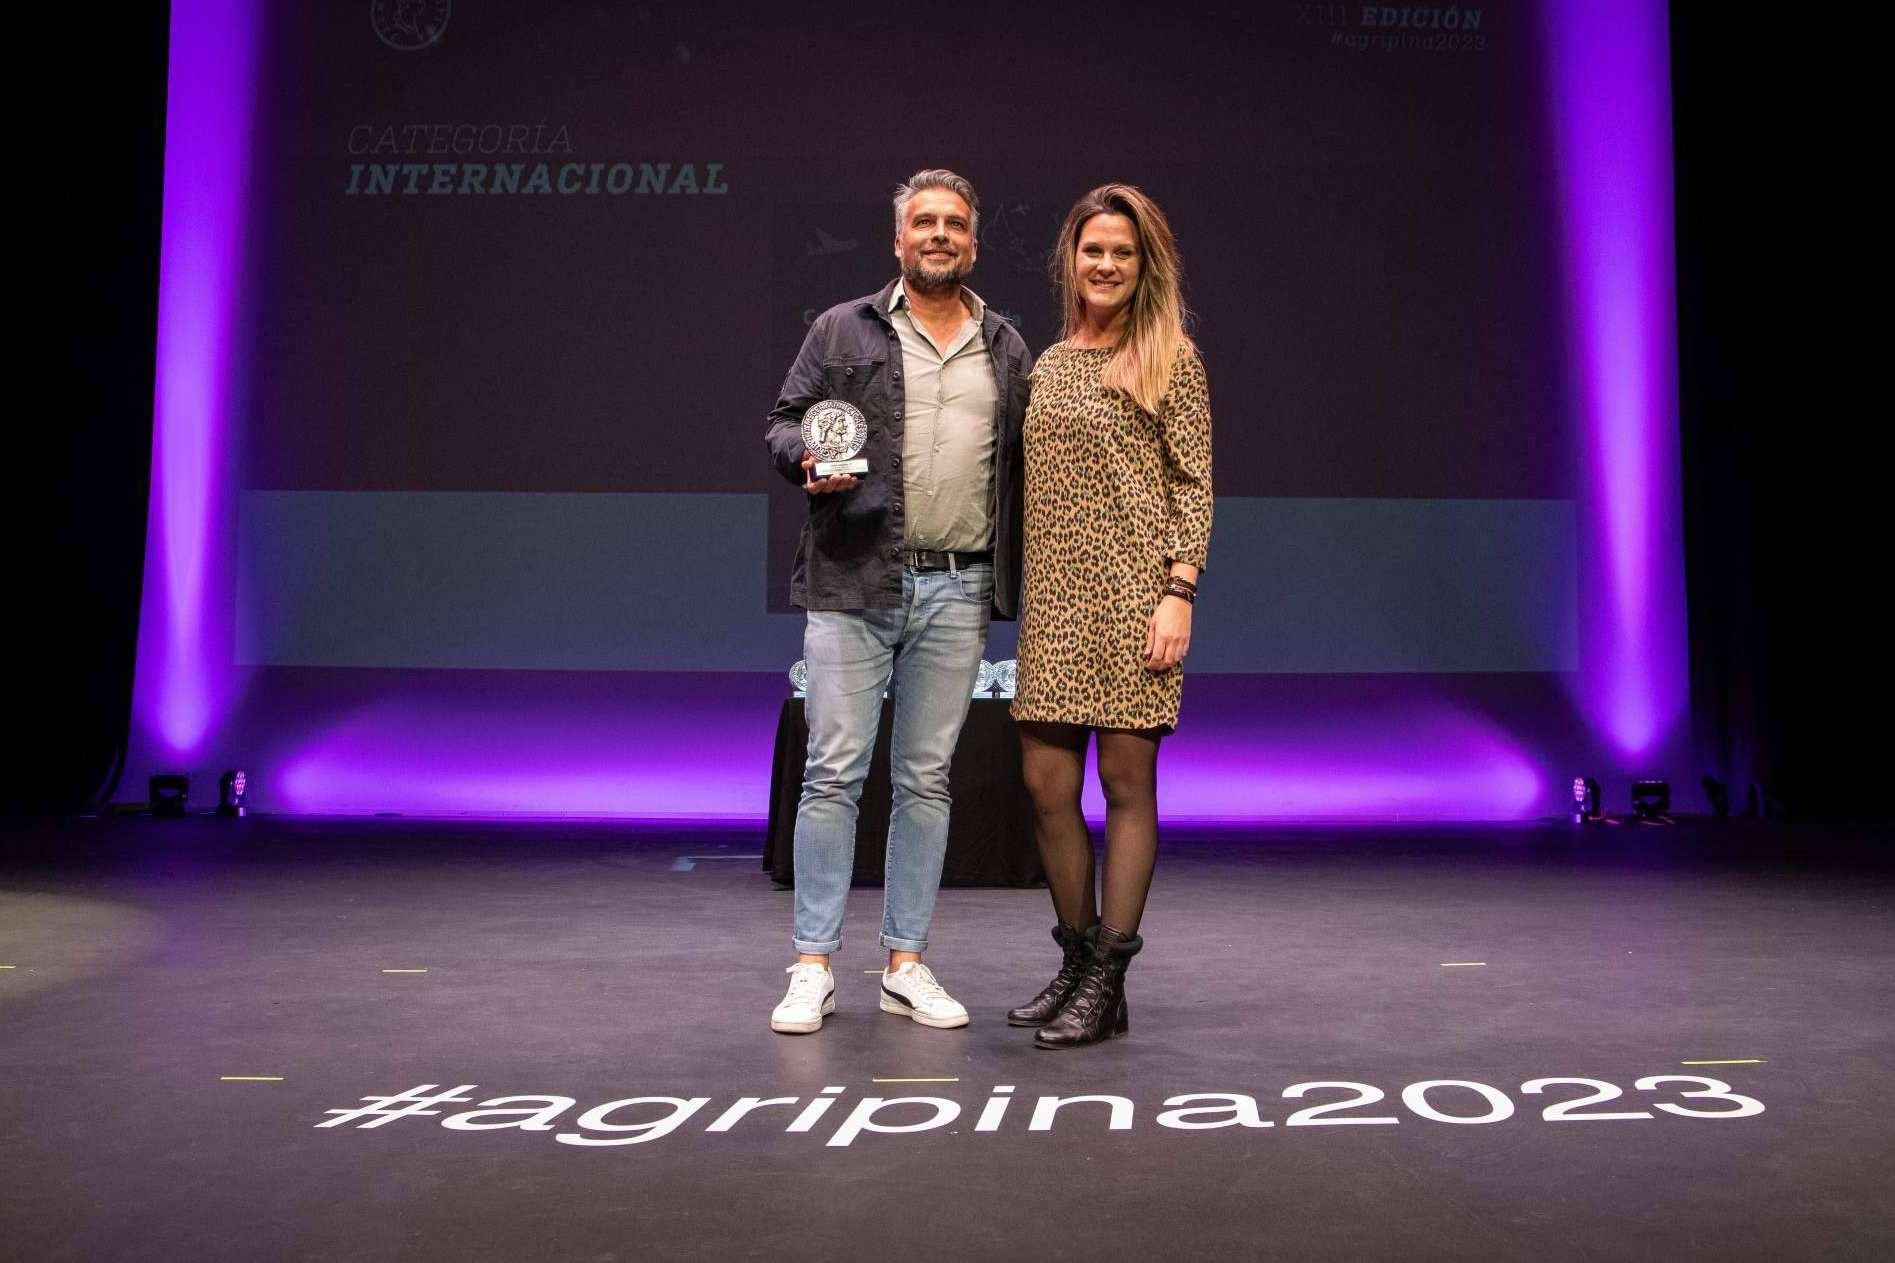  Los Premios Agripina reconocen internacionalmente a la agencia Puraenvidia 